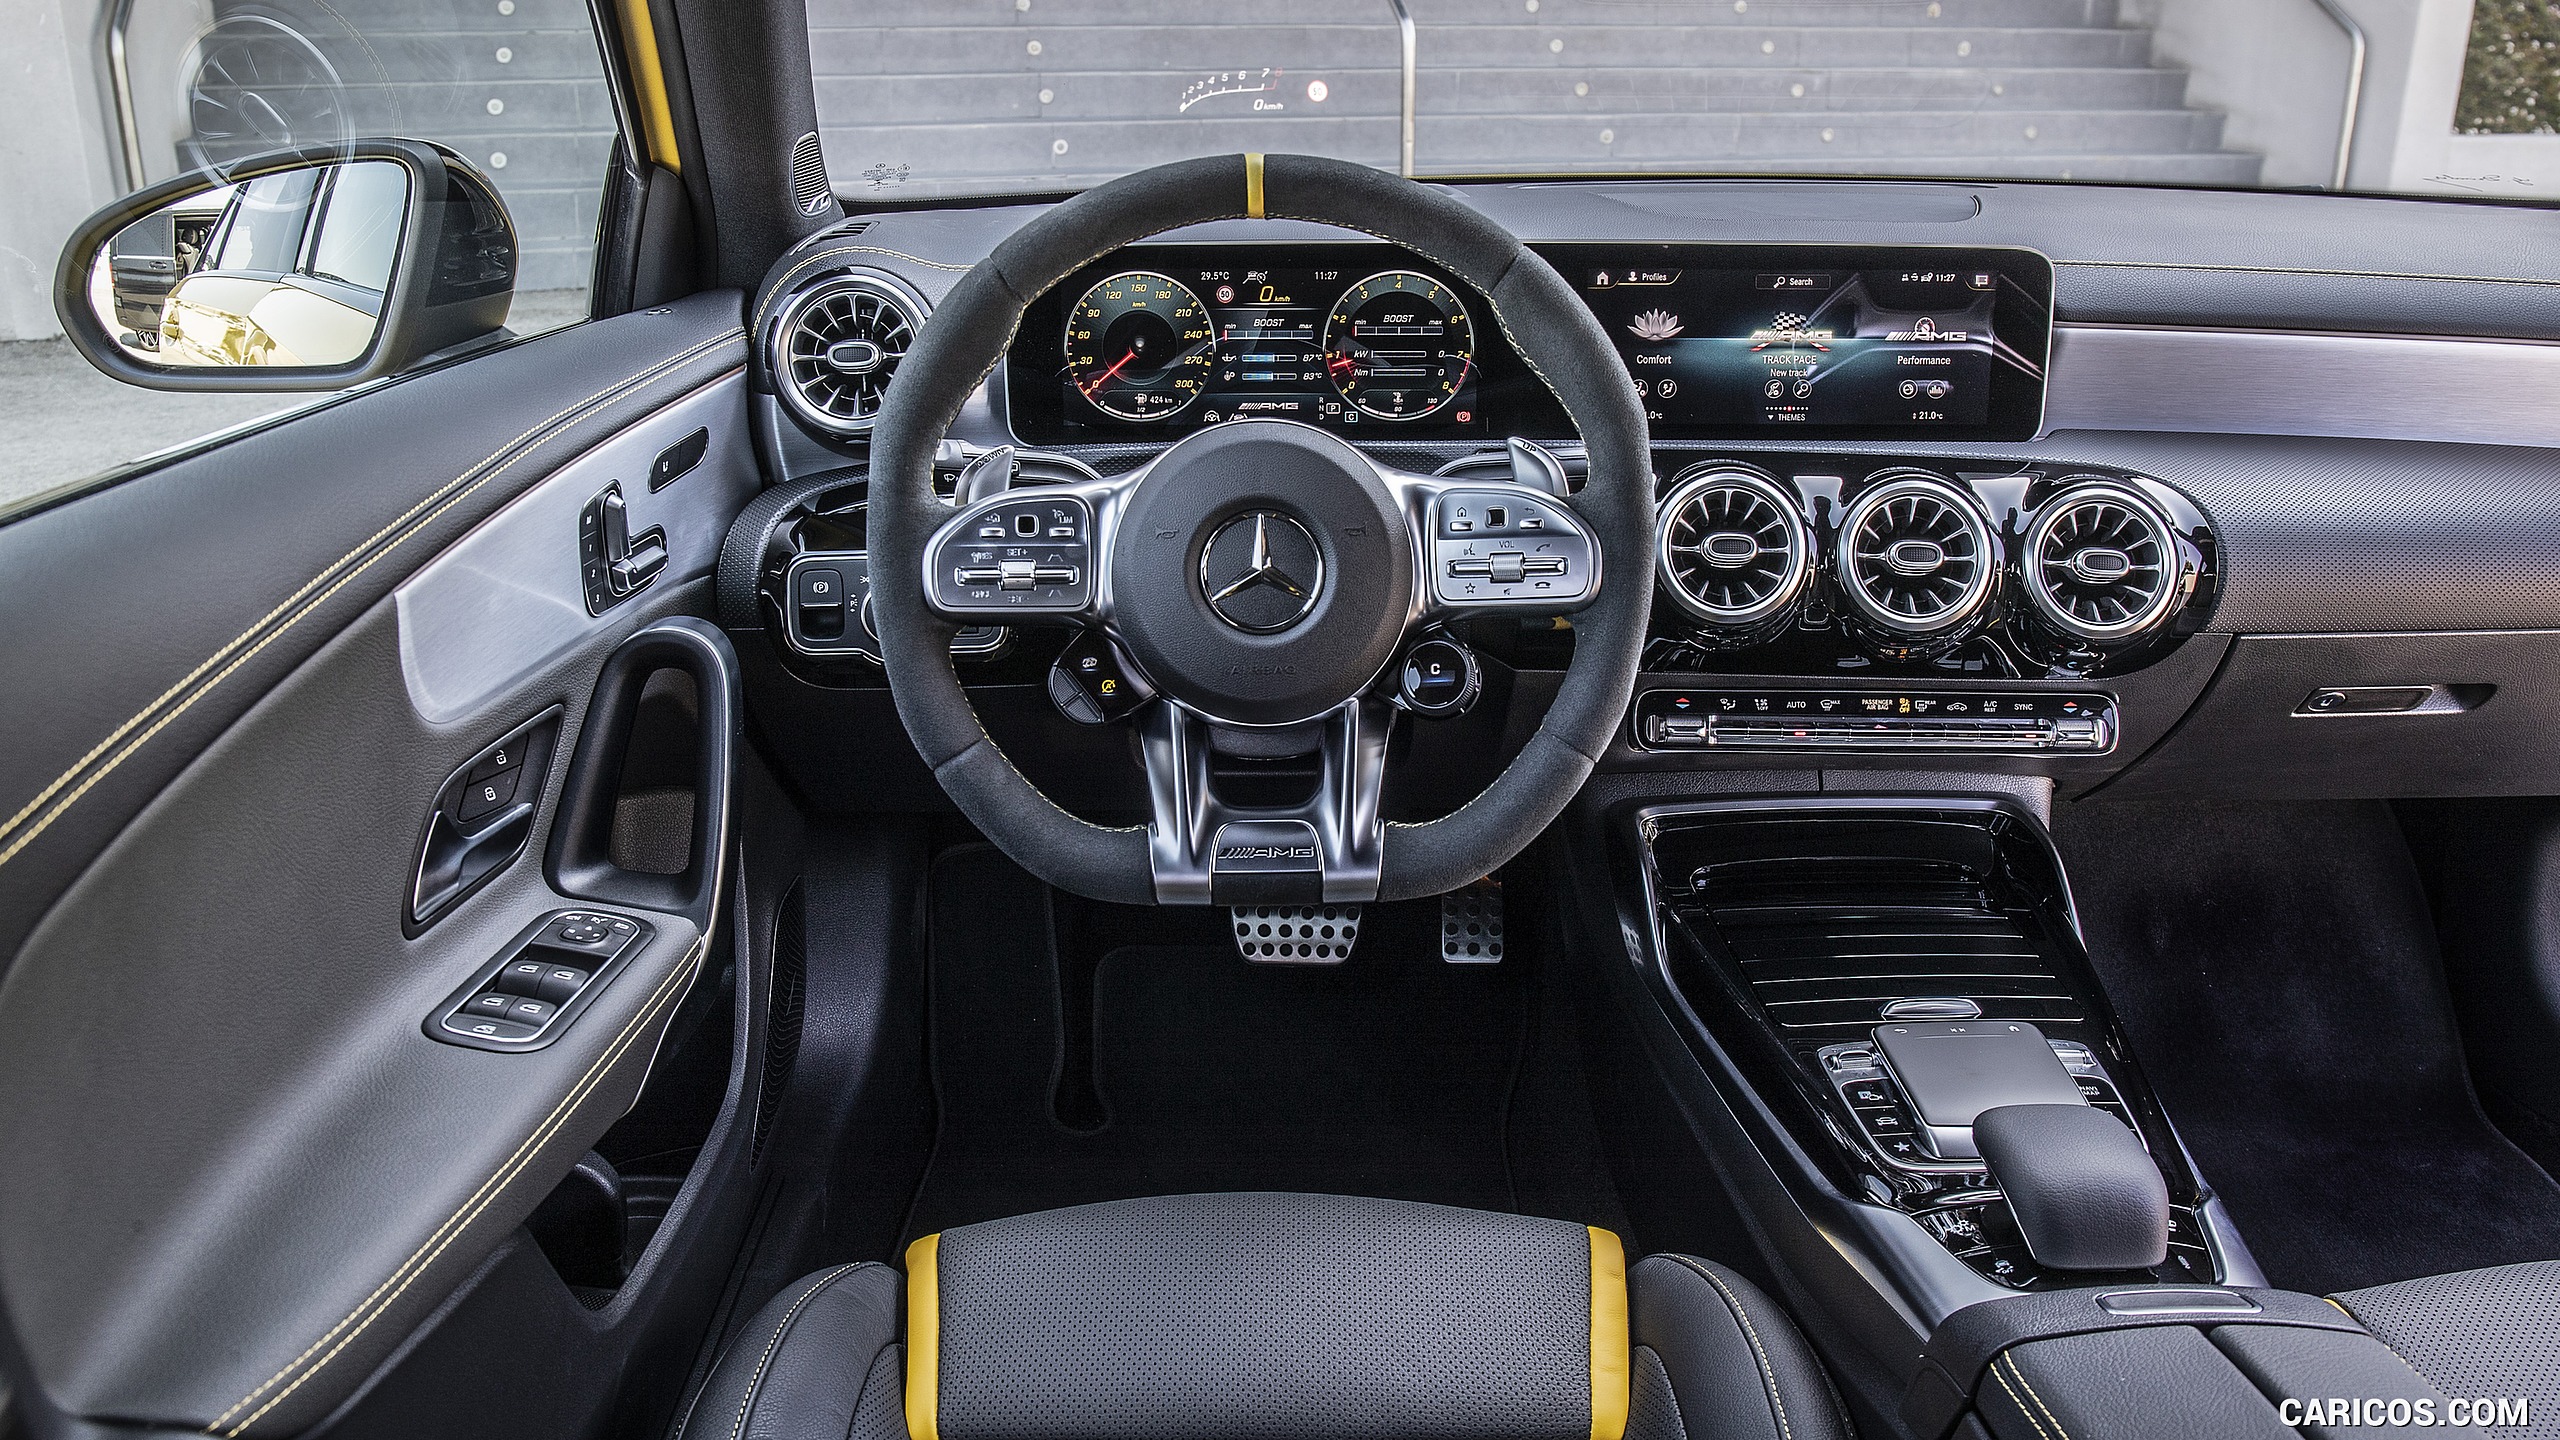 2020 Mercedes-AMG A 45 S 4MATIC+ - Interior, Cockpit, #111 of 188